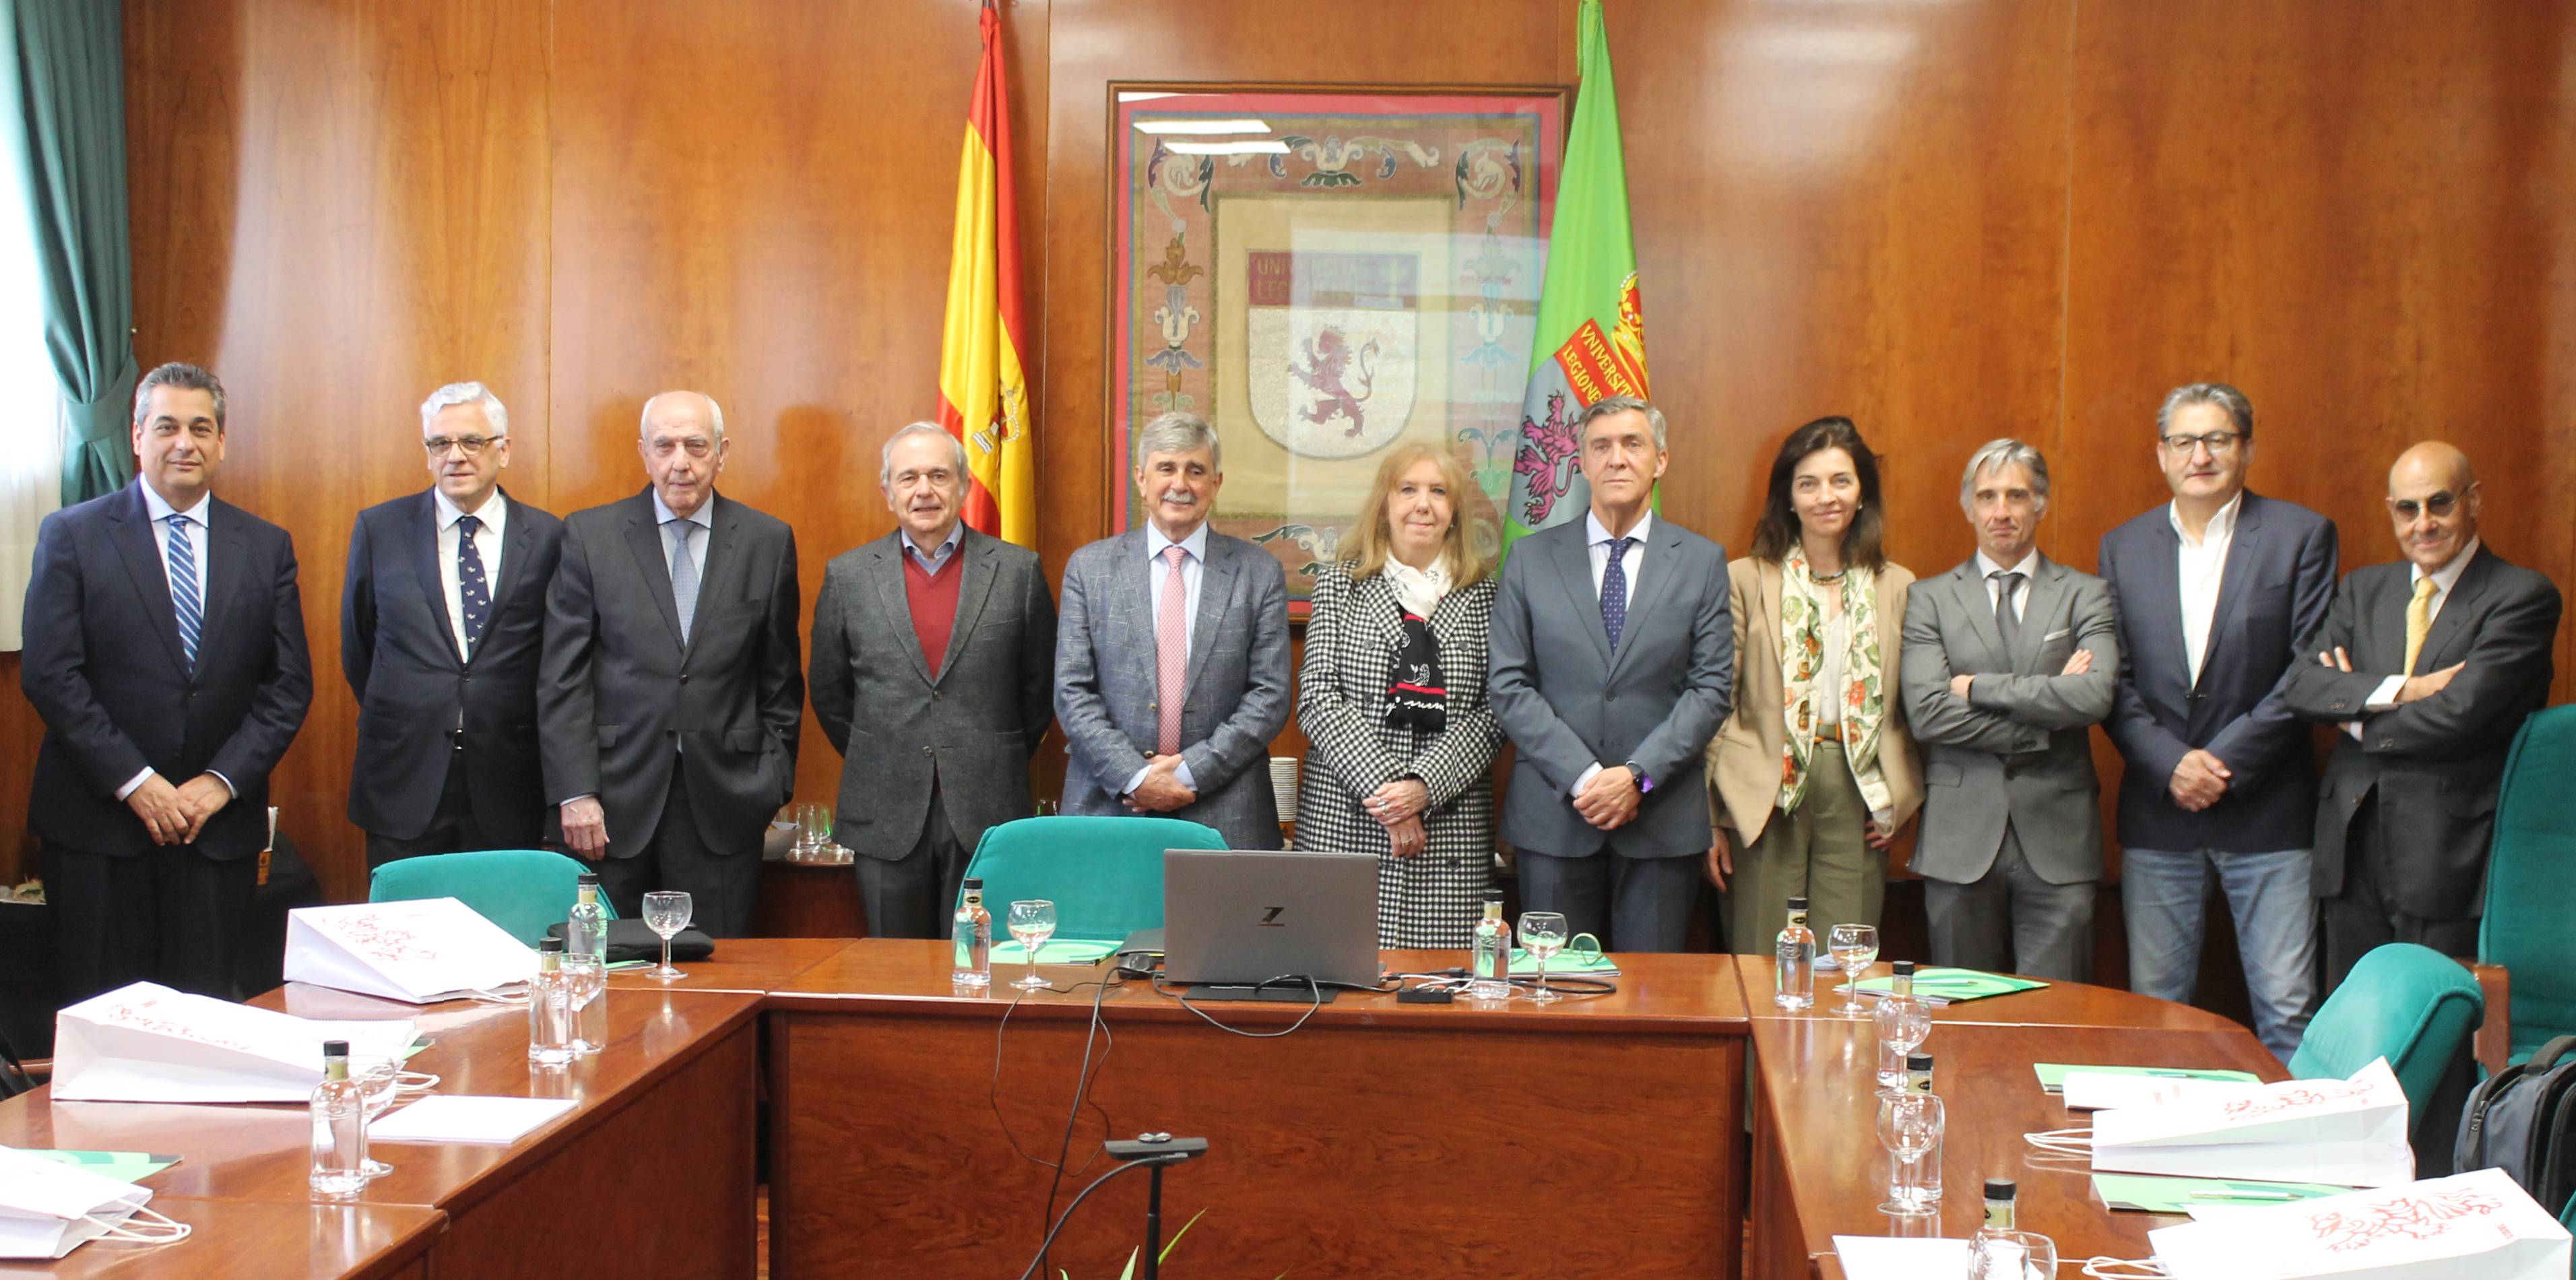 El rector Marín recibió a los presidentes de los consejos sociales. | L.N.C.